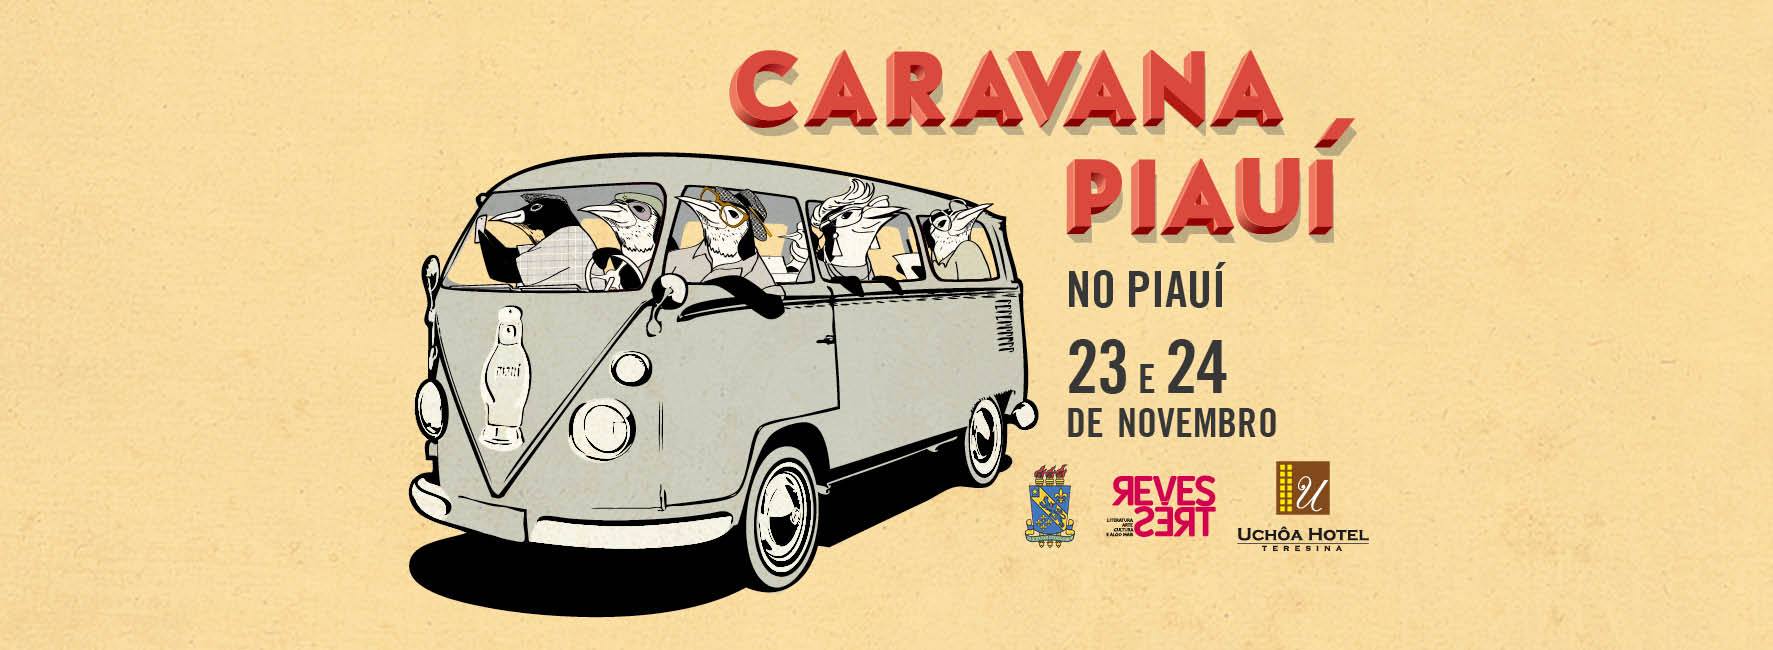 Caravana Revista Piauí